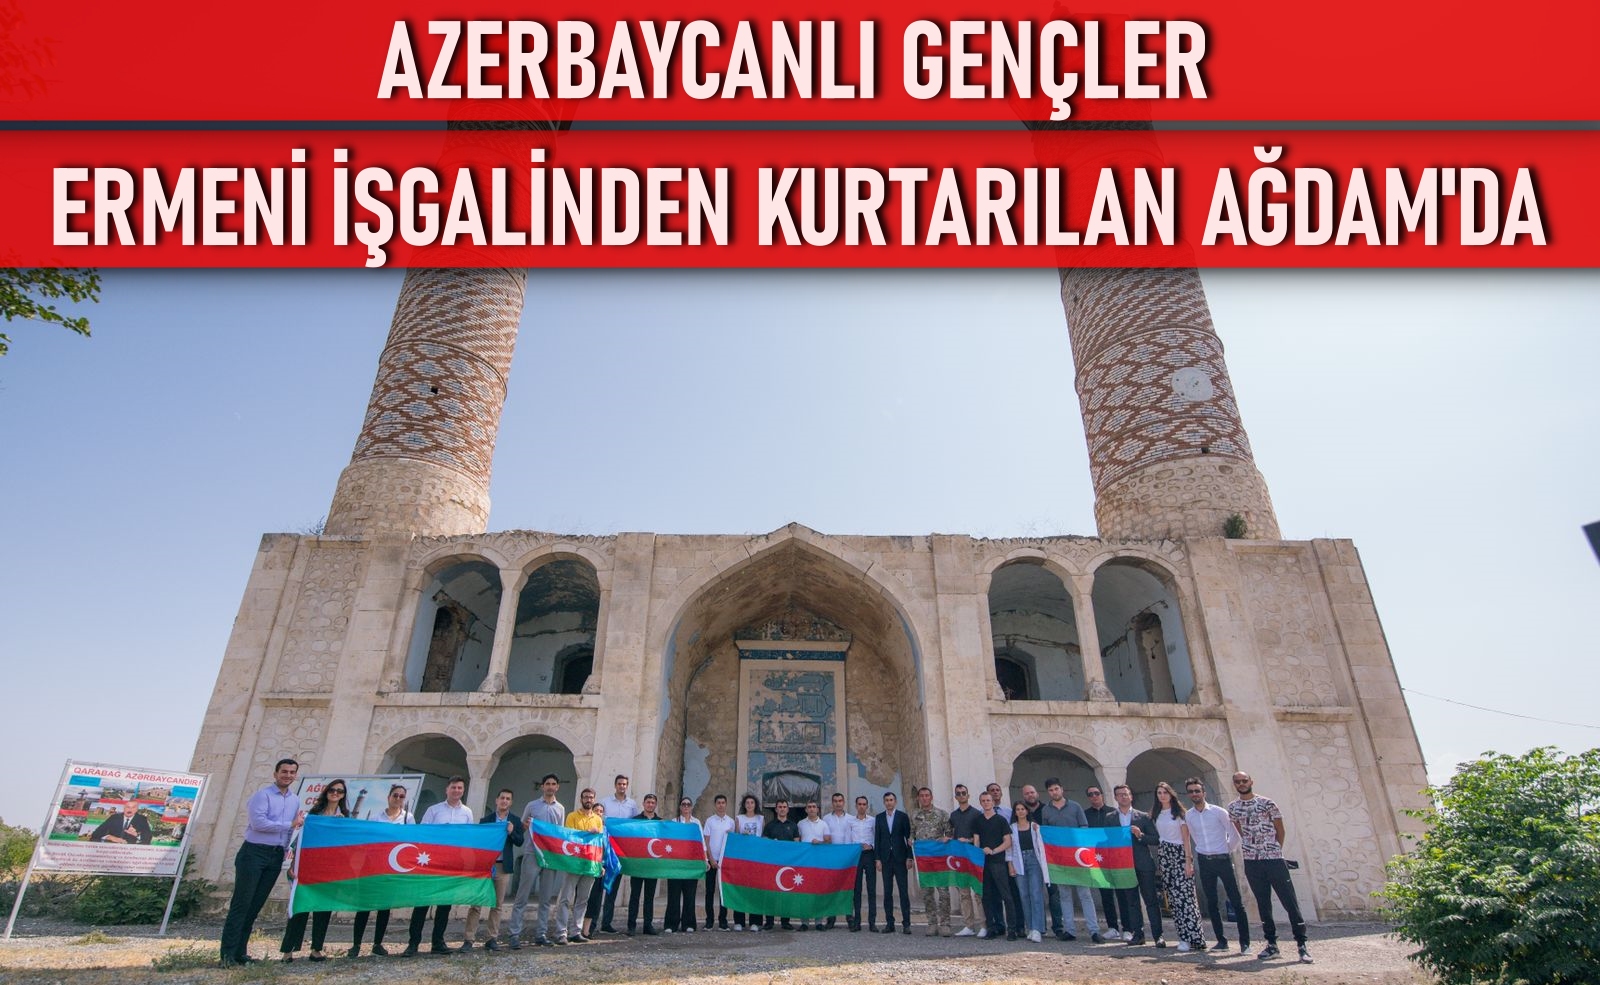 Azerbaycanlı gençler Ermeni işgalinden kurtarılan Ağdam'da